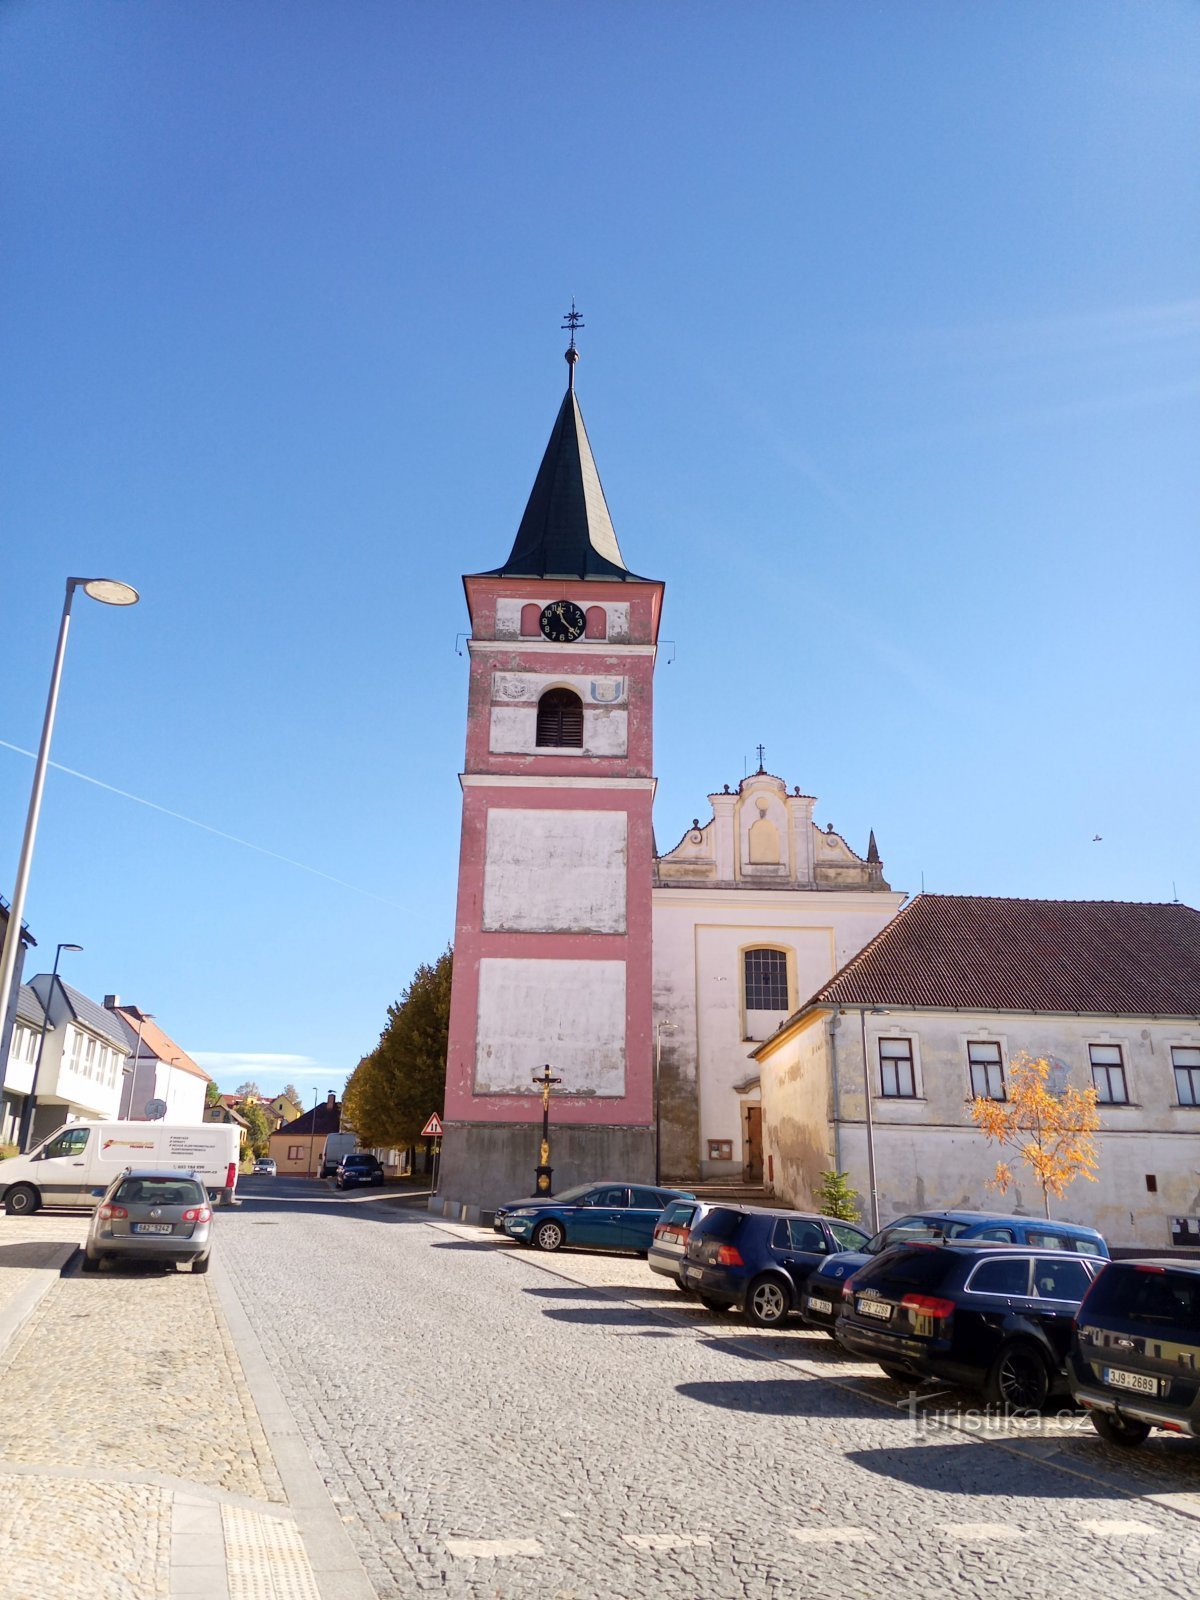 2. Tháp chuông hình lăng trụ đứng độc lập ở Černovice đã được sửa đổi theo phong cách Baroque sau khi Mr